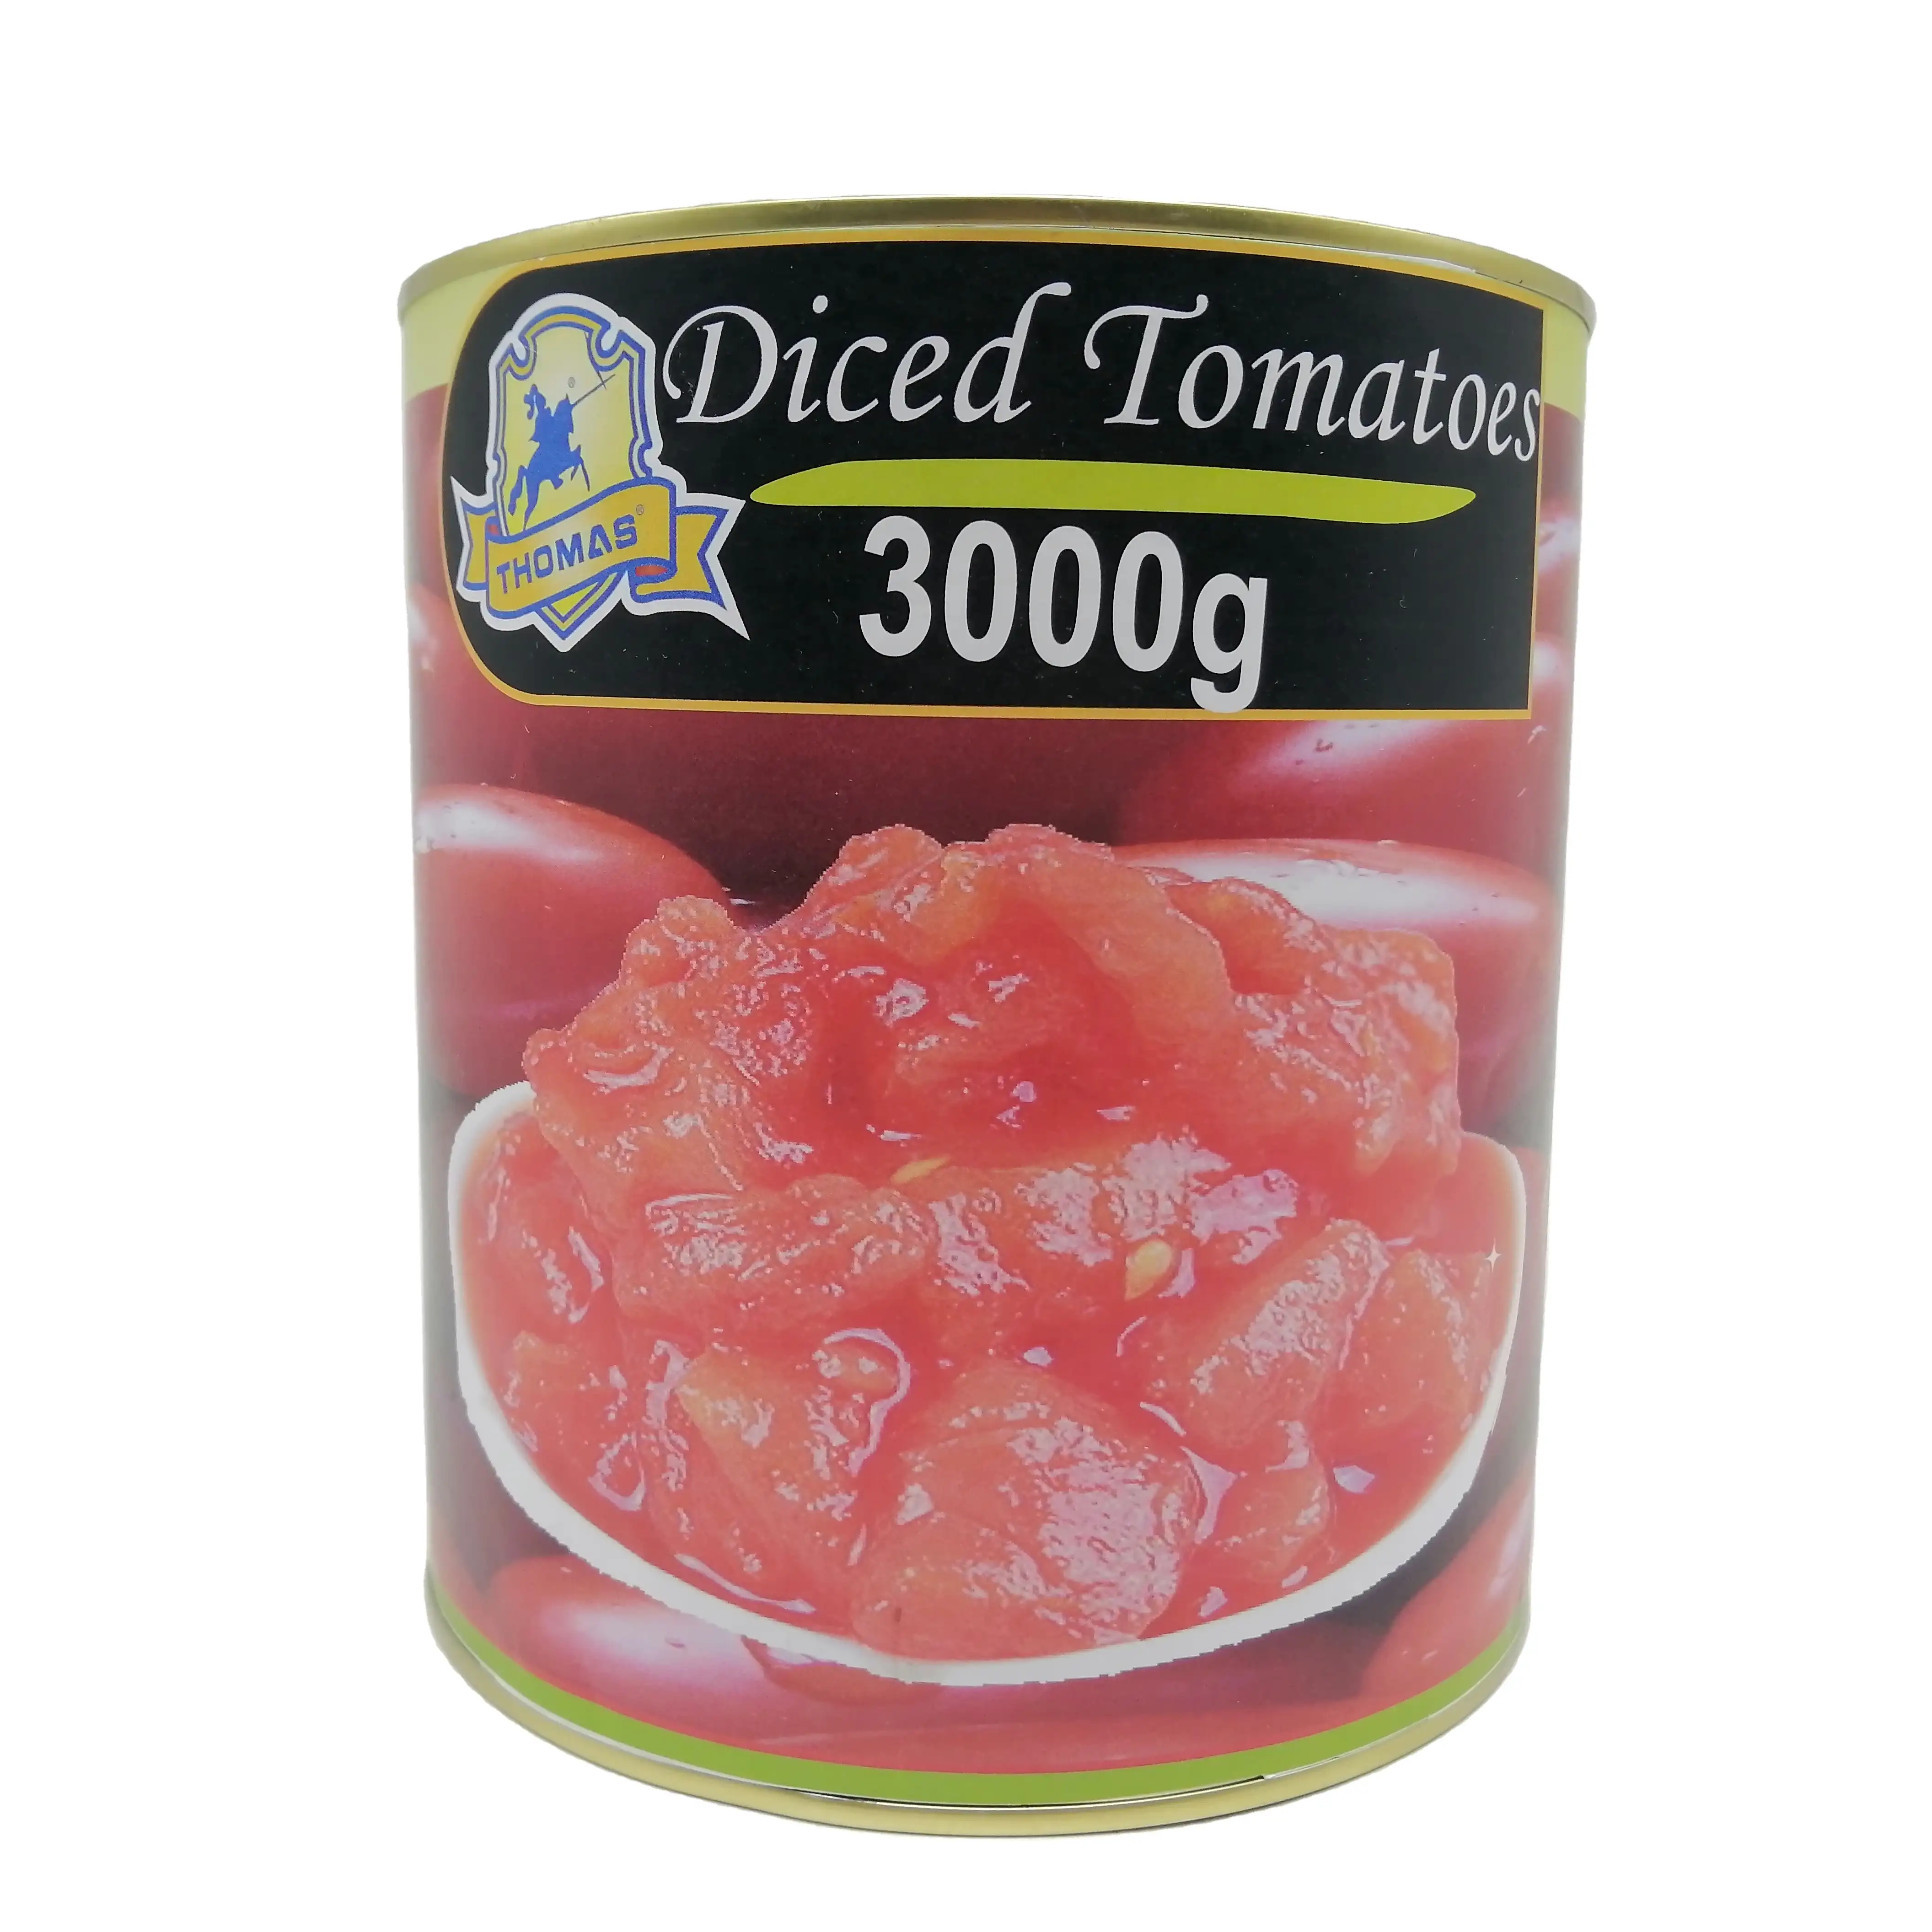 Nessun artificiale nessun colore nessun conservante alta concentrazione taglia il pomodoro in scatola